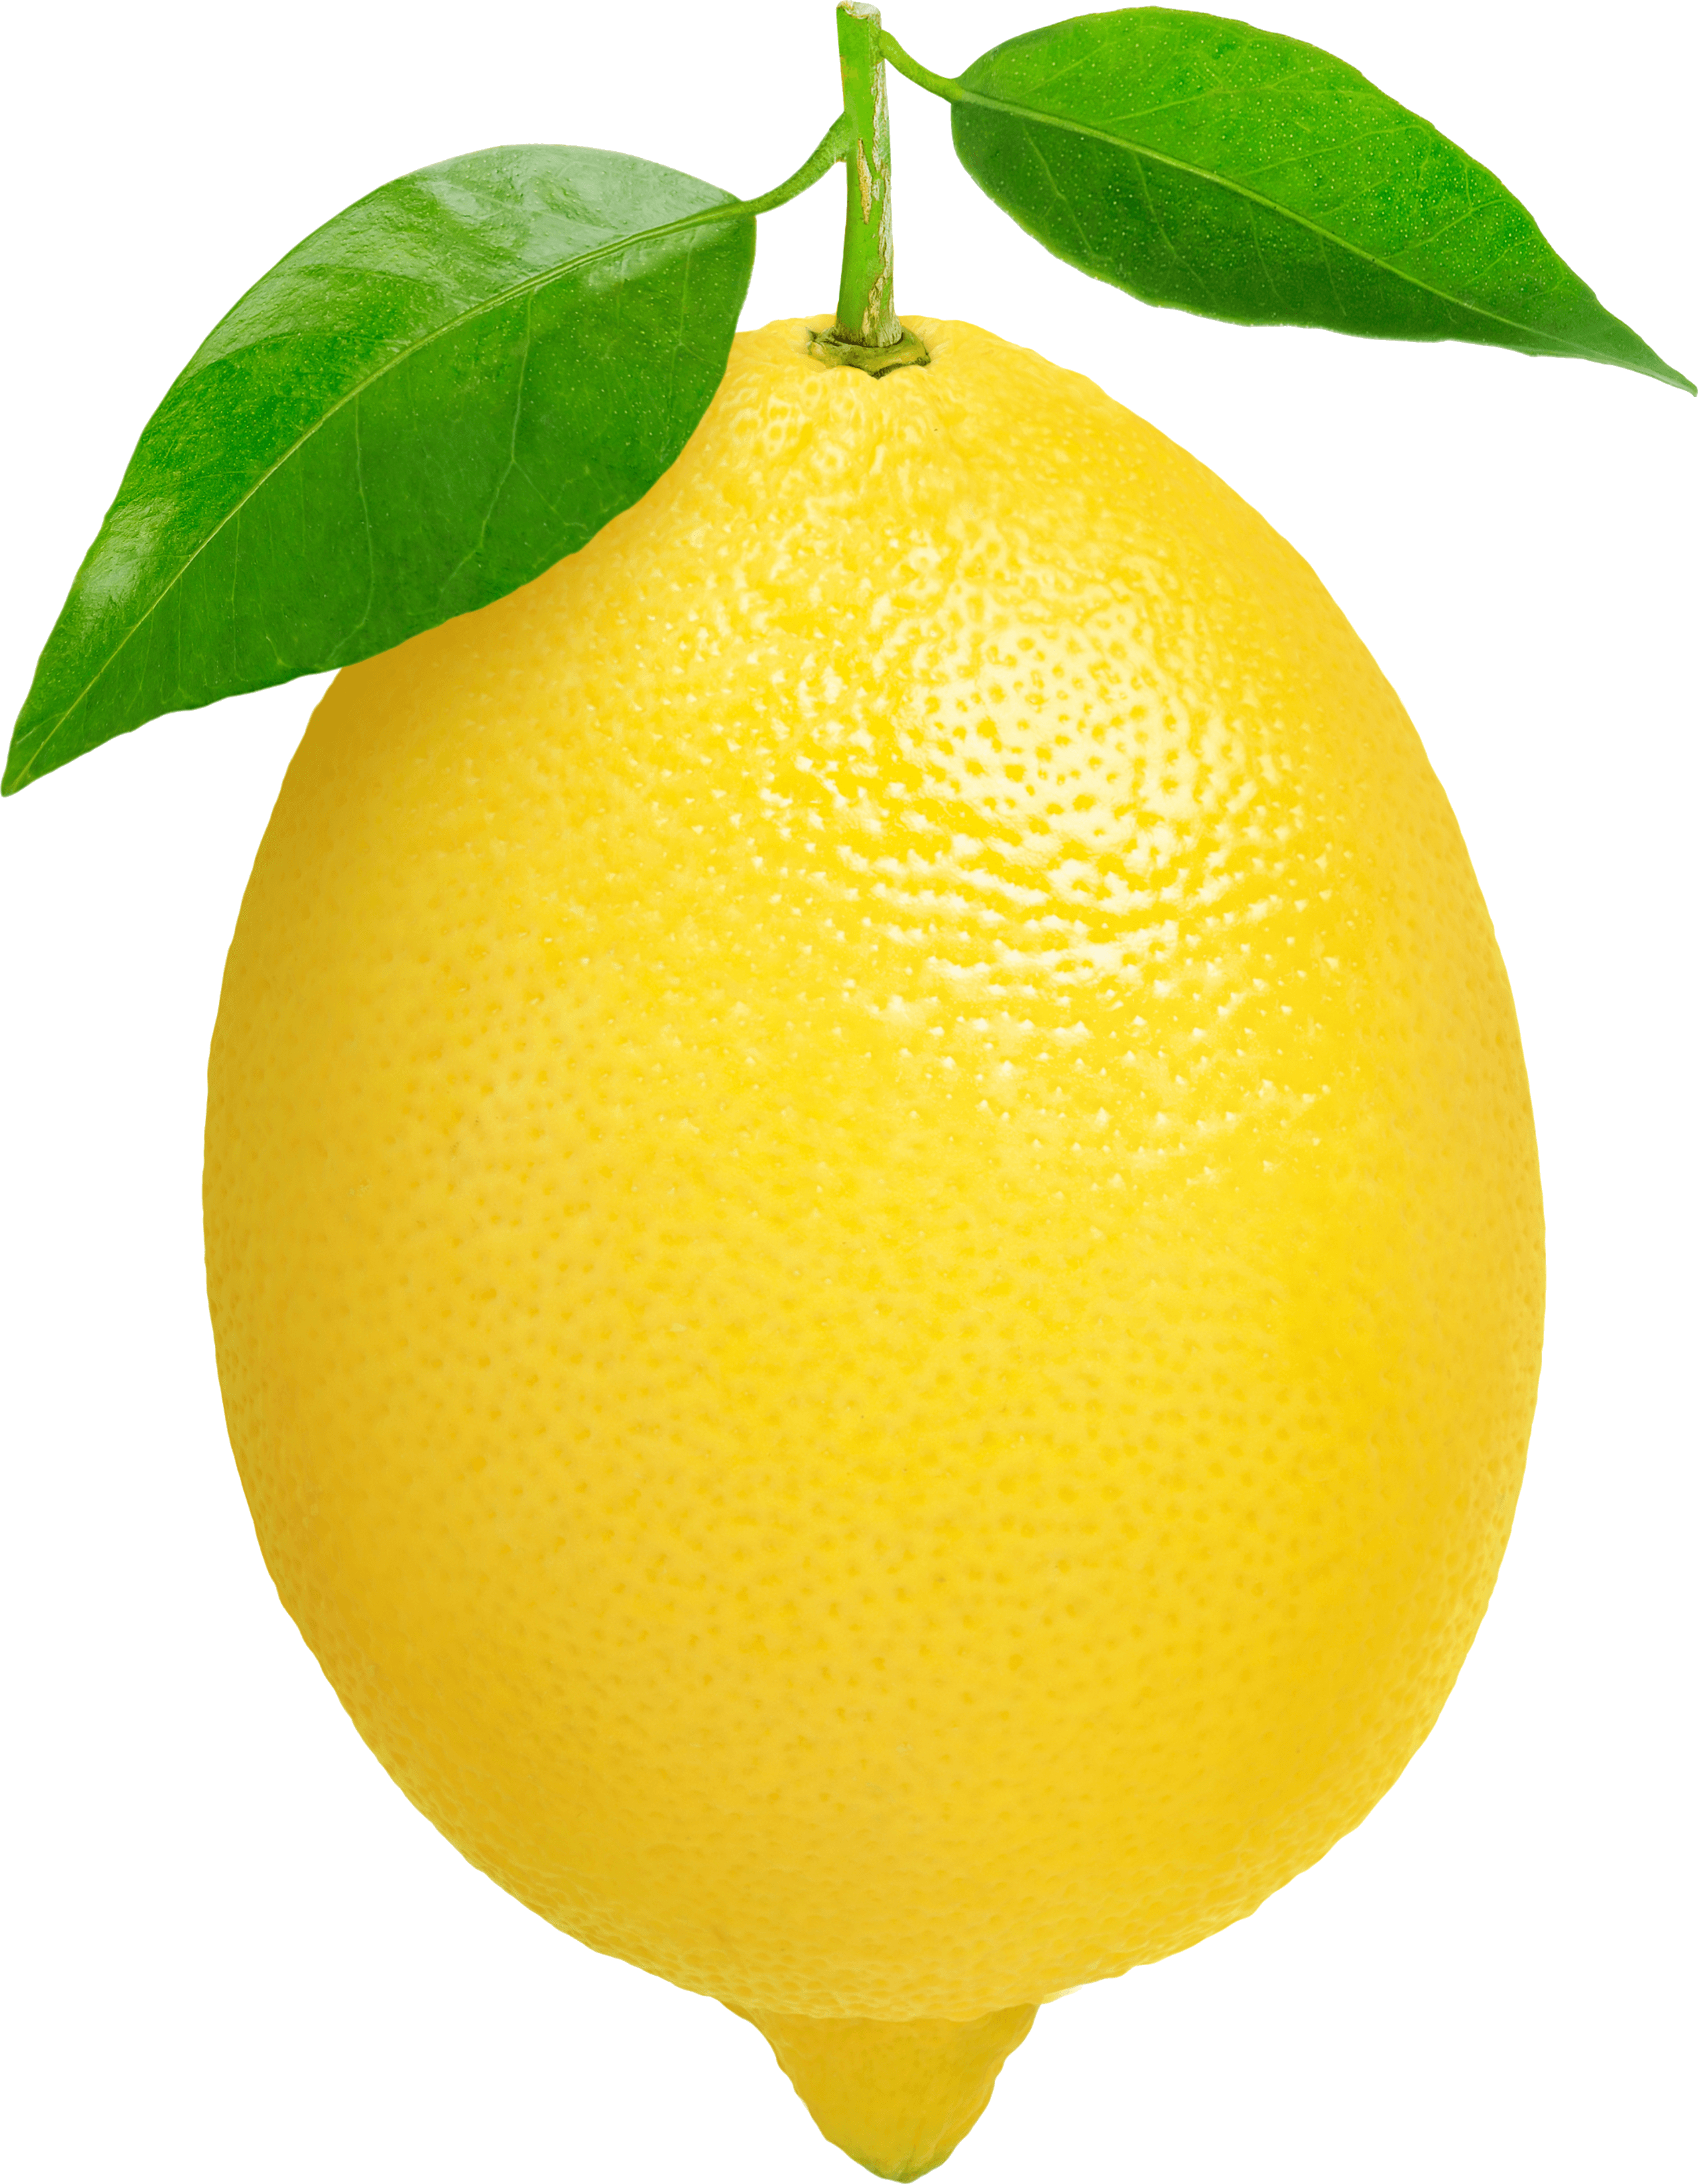 Organic Lemon Png image #3864